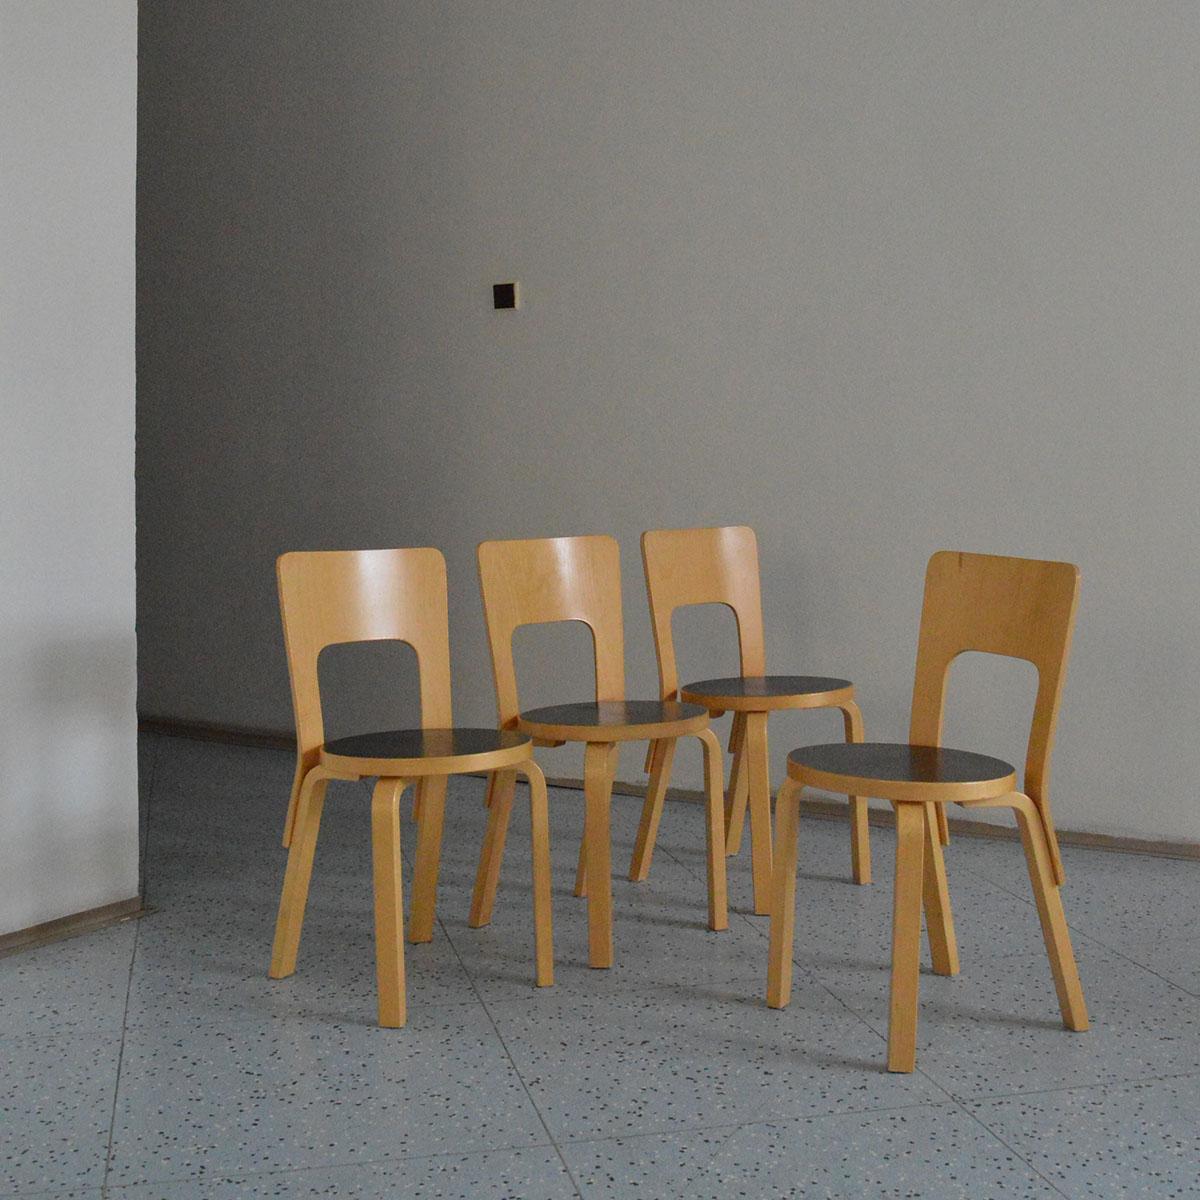 Ensemble de quatre chaises à manger en bouleau, modèle 66, conçu par Alvar Aalto et fabriqué par Artek en Finlande, années 1980. 

Ces chaises font partie de la série iconique 66 Chair conçue par le célèbre architecte et designer finlandais Alvar